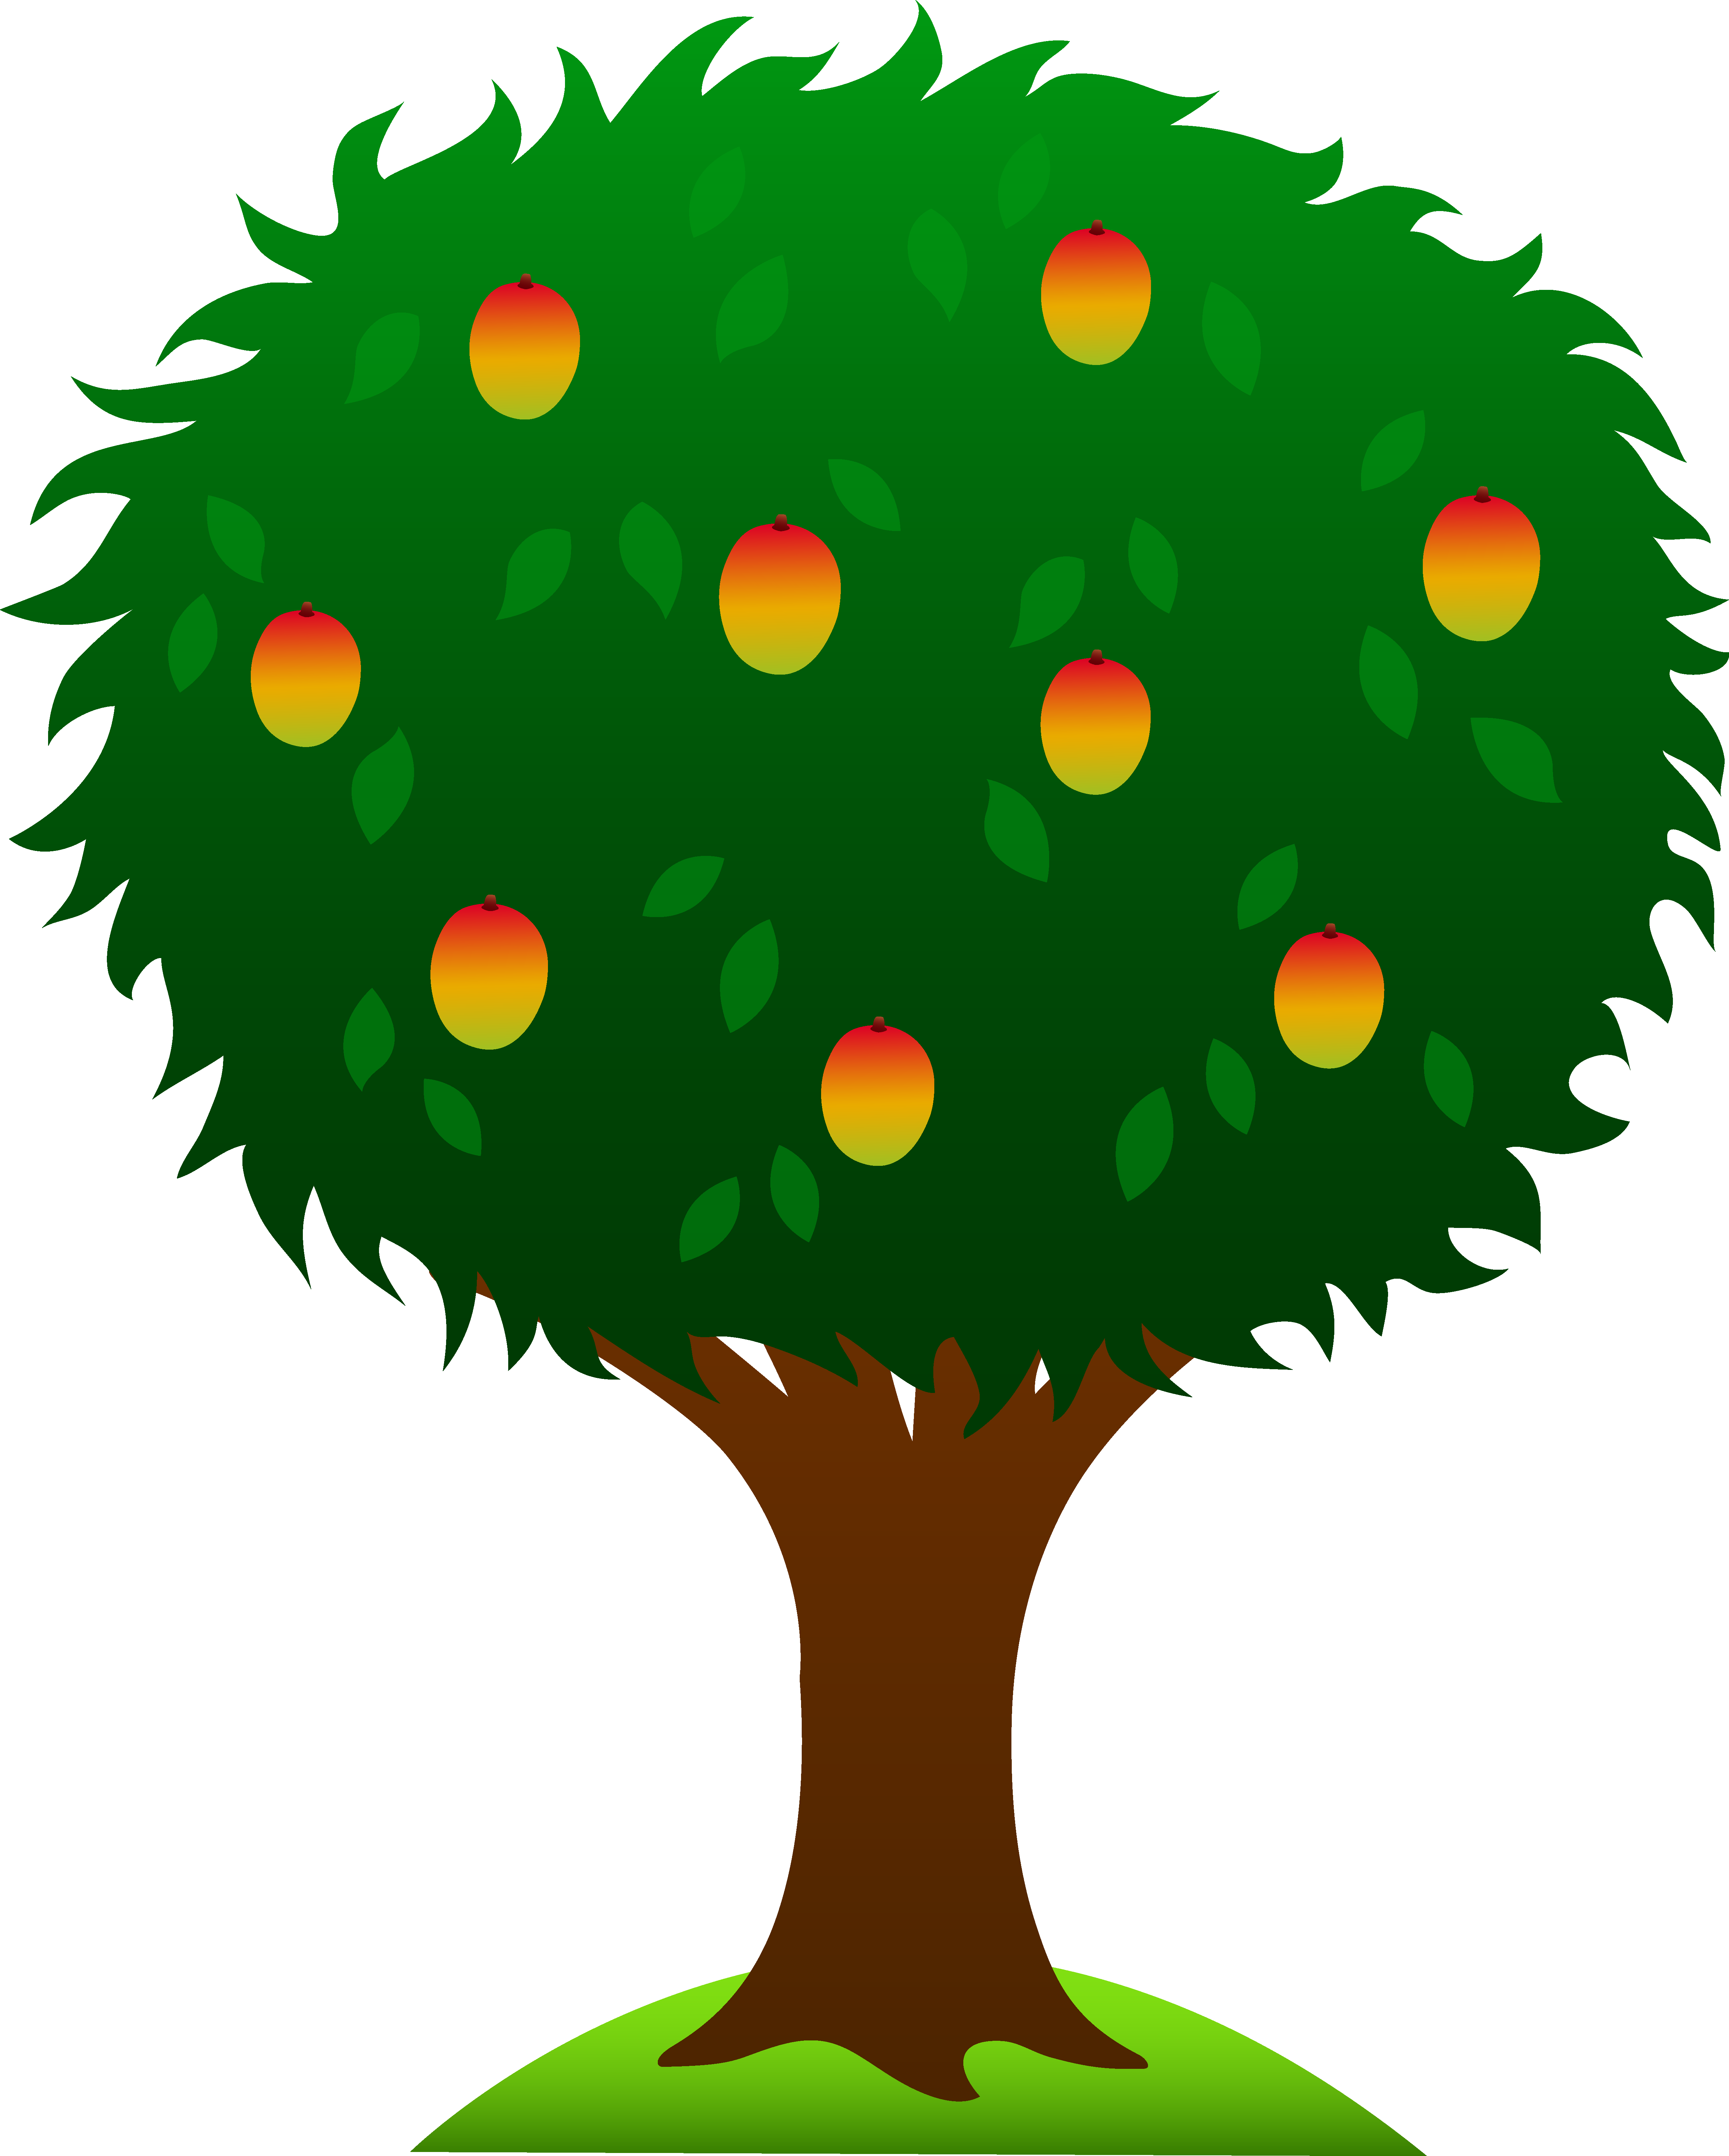 Fruit tree clipart - ClipartFox